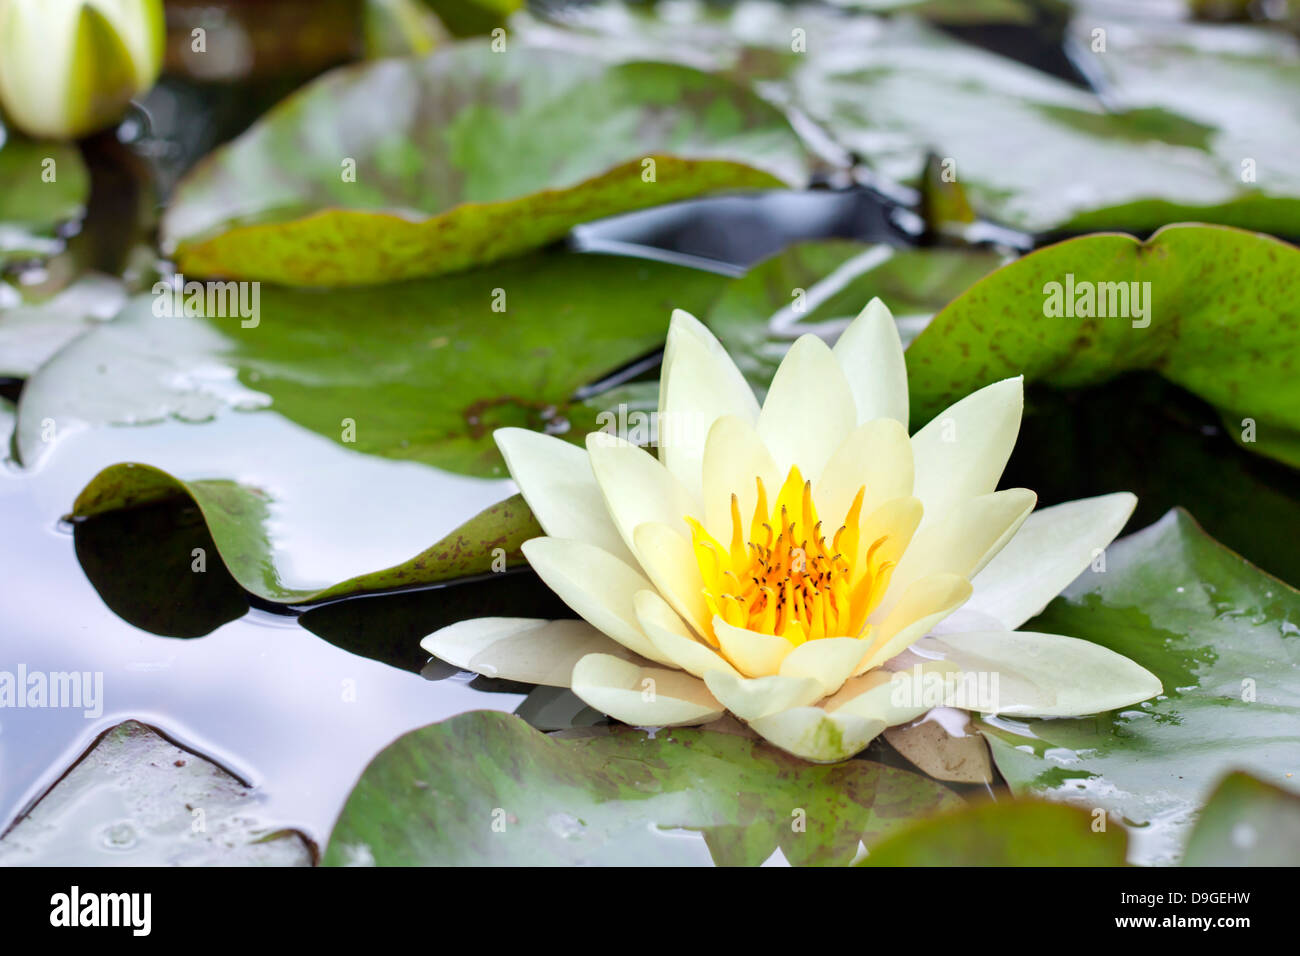 Fleur de lotus jaune ou water lily flower closeup Banque D'Images